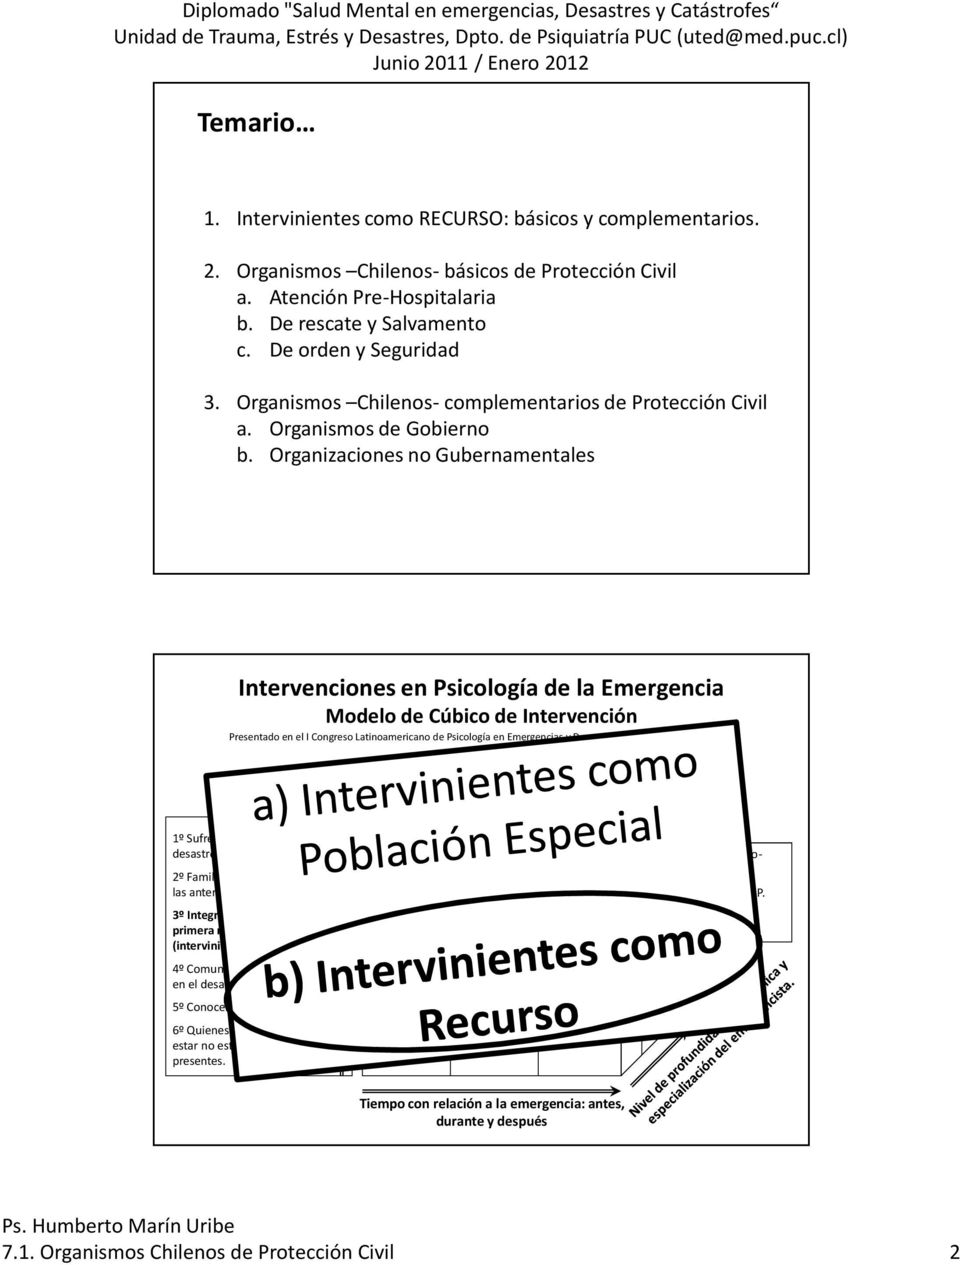 Organizaciones no Gubernamentales Intervenciones en Psicología de la Emergencia Modelo de Cúbico de Intervención Presentado en el I Congreso Latinoamericano de Psicología en Emergencias y Desastres,